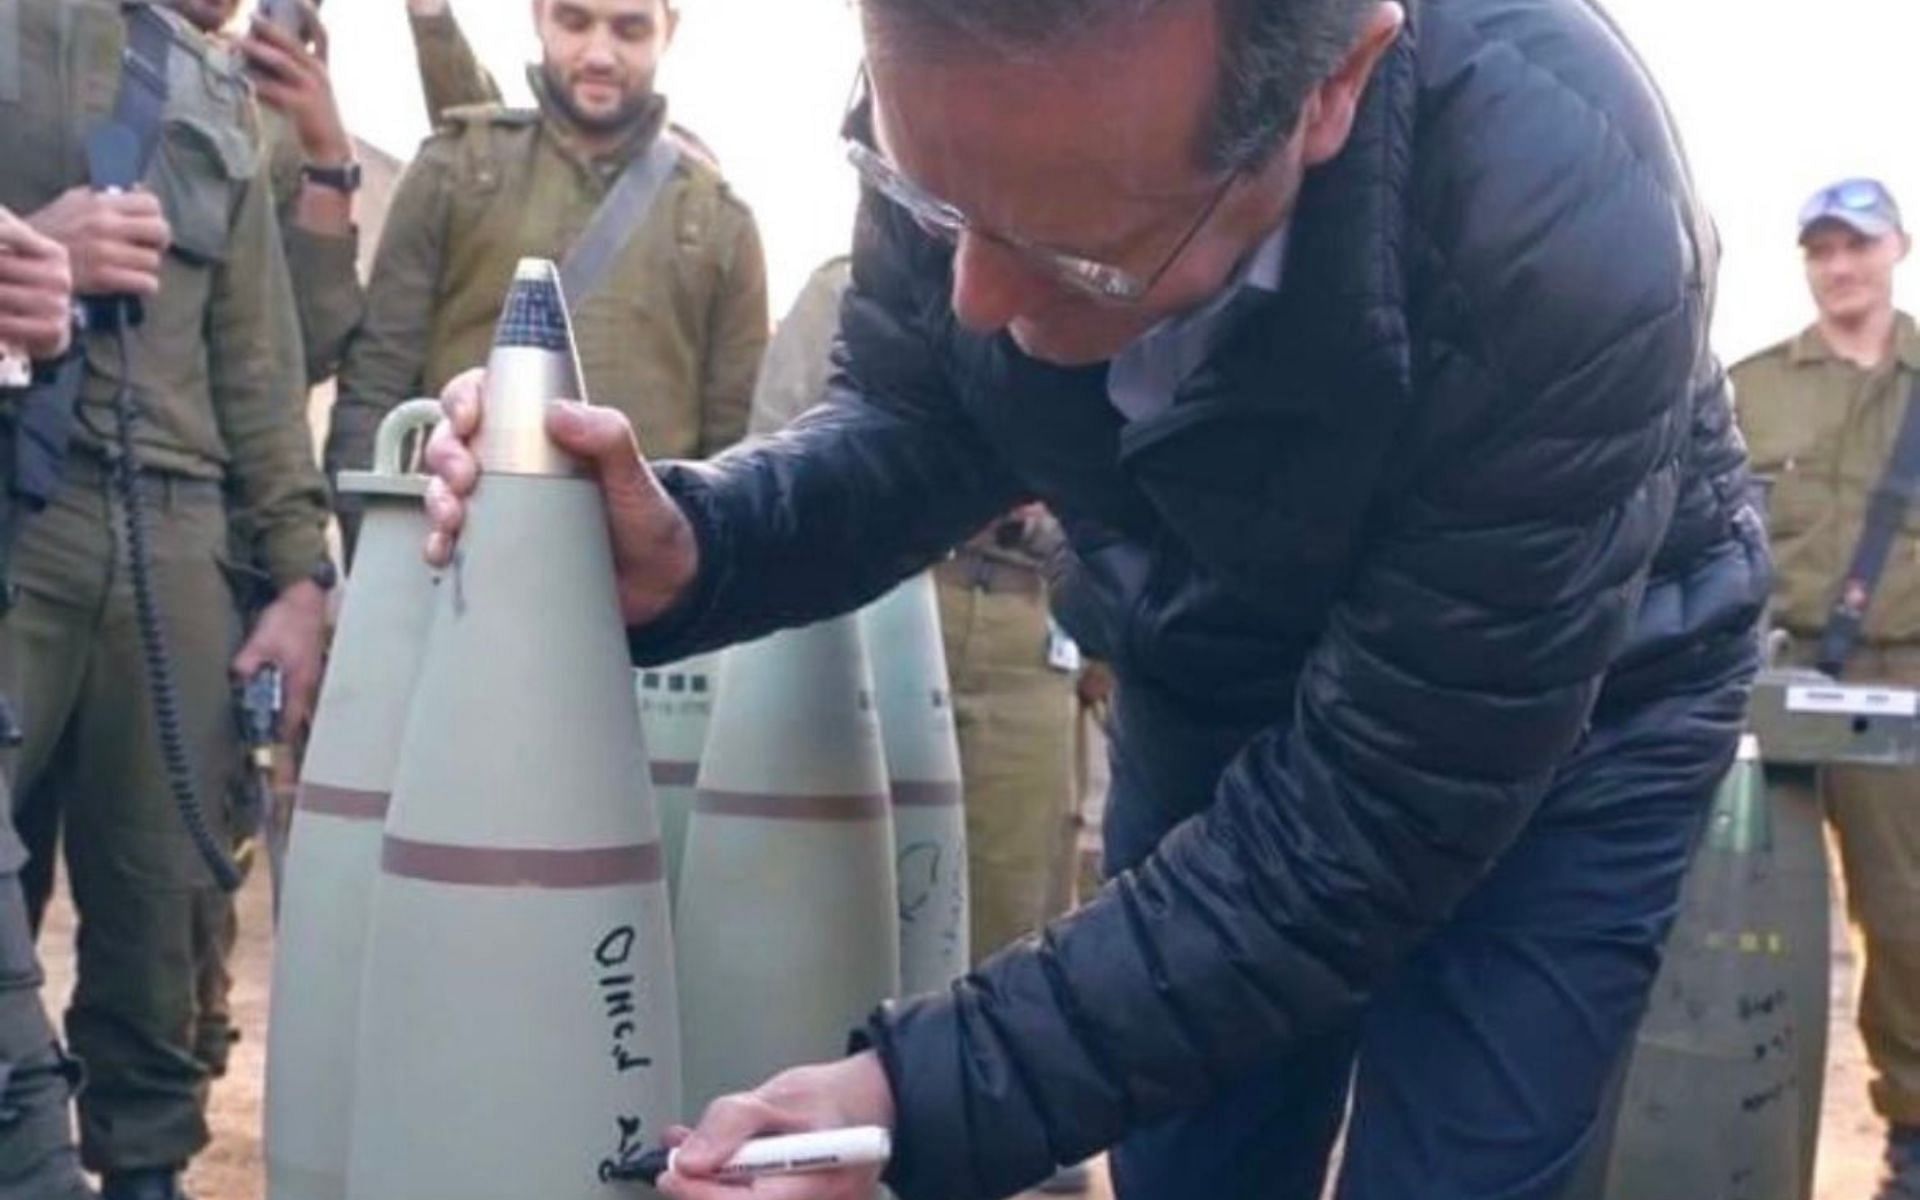 Israeli President Isaac Herzog writing messages on missiles (Image Courtesy - @jakeshieldsajj on X/Twitter)